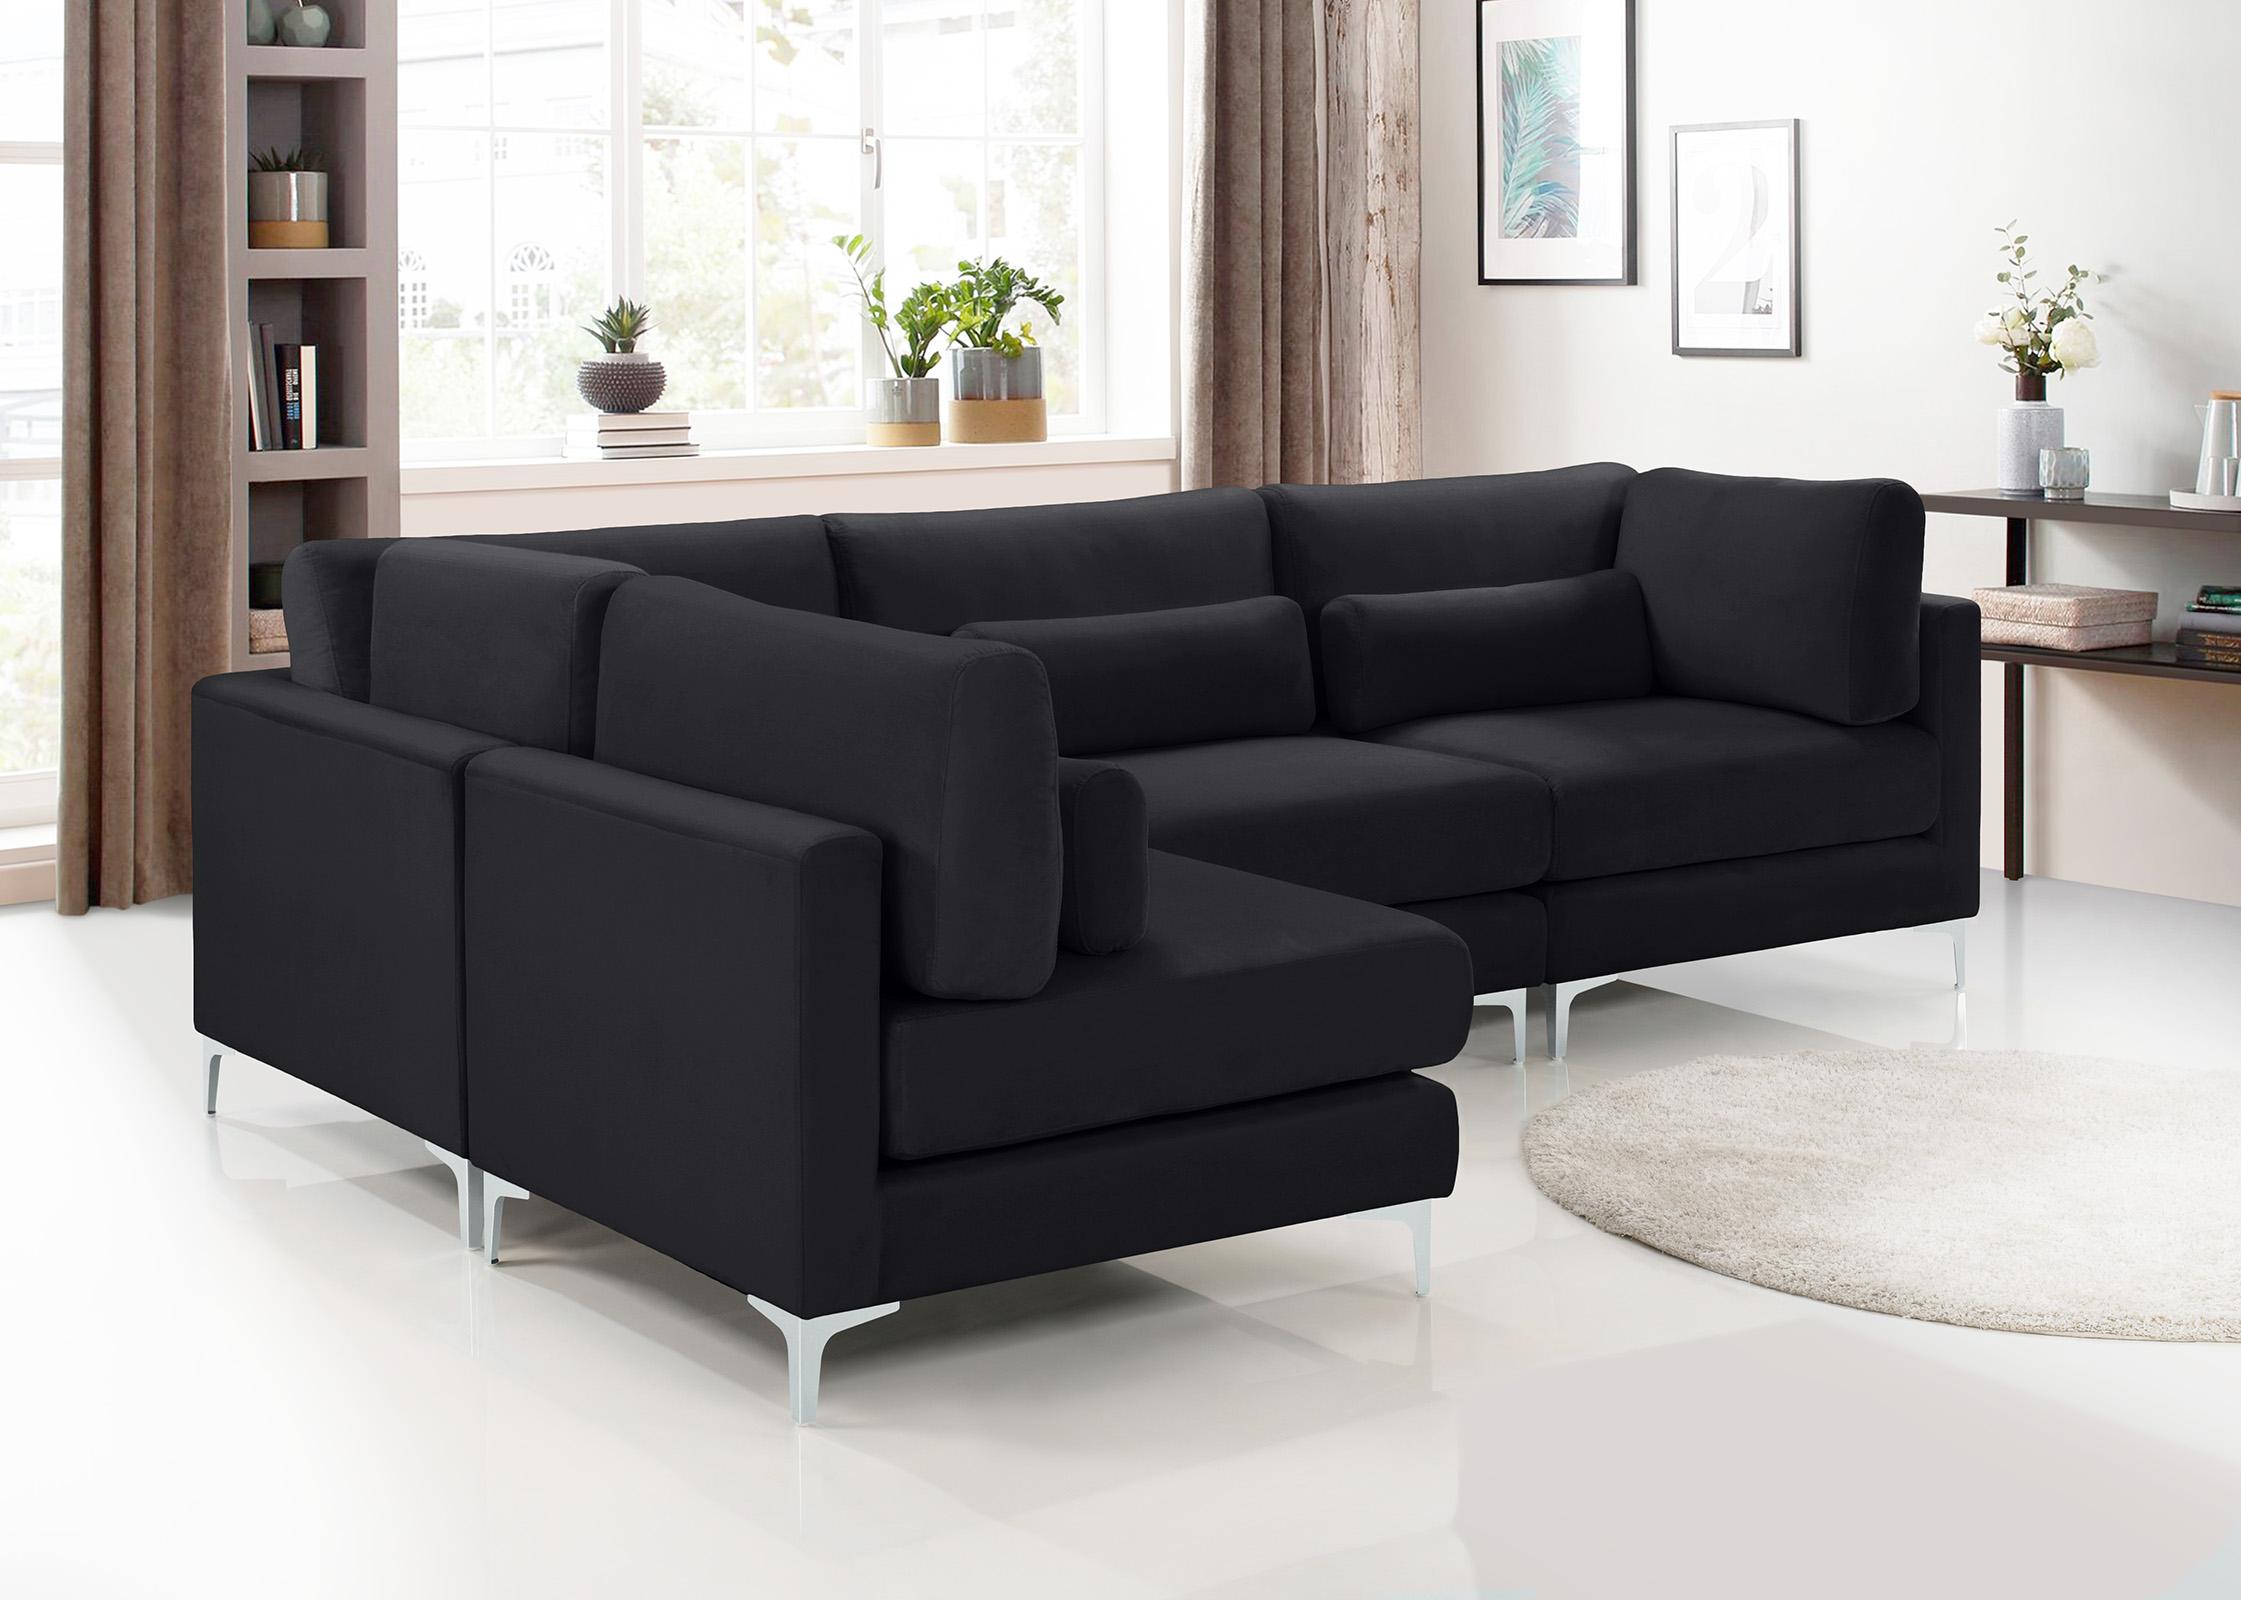 

    
Meridian Furniture JULIA 605Black-Sec4B Modular Sectional Sofa Black 605Black-Sec4B
